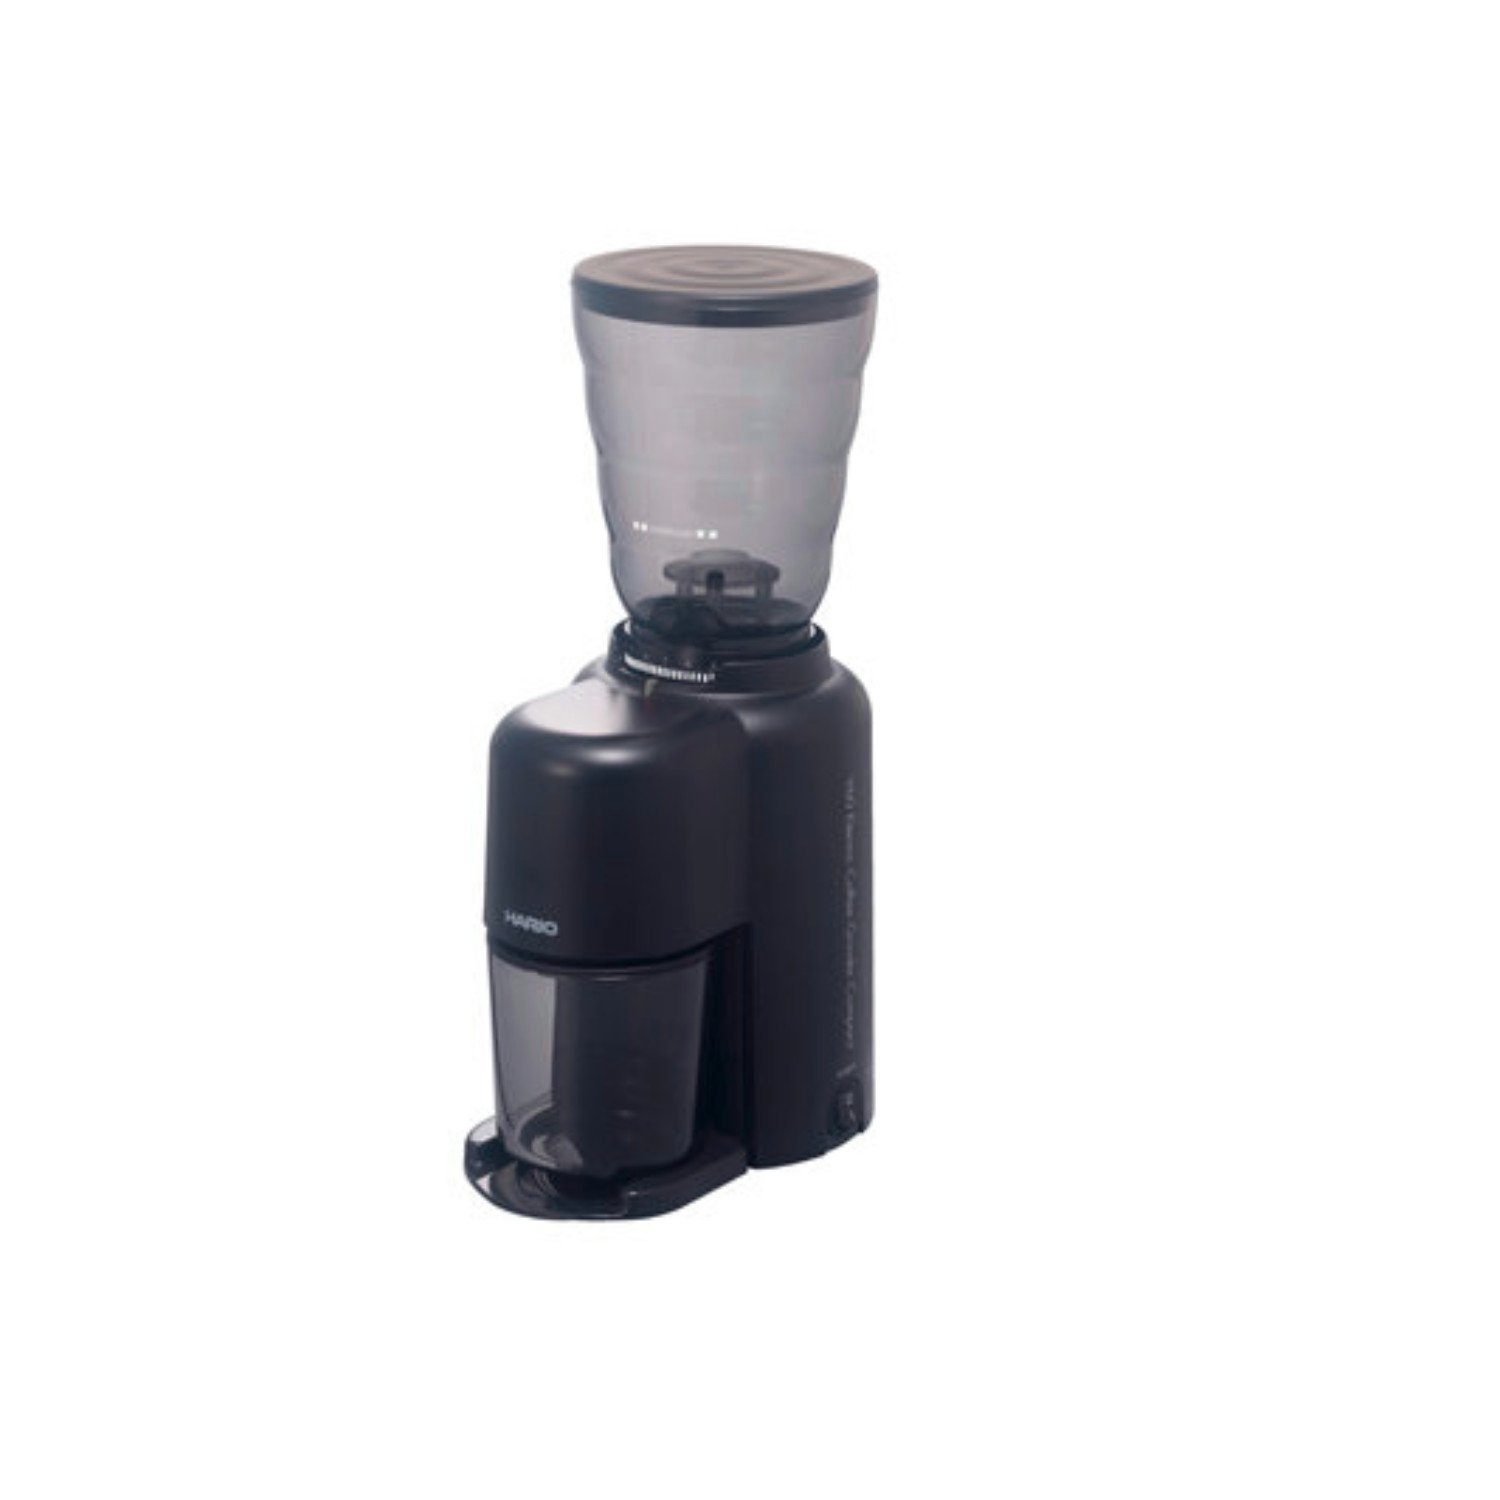 100,00 g Kaffeemühle Edelstahl, Hario V60 Compact, aus Mahlscheiben Bohnenbehälter konische